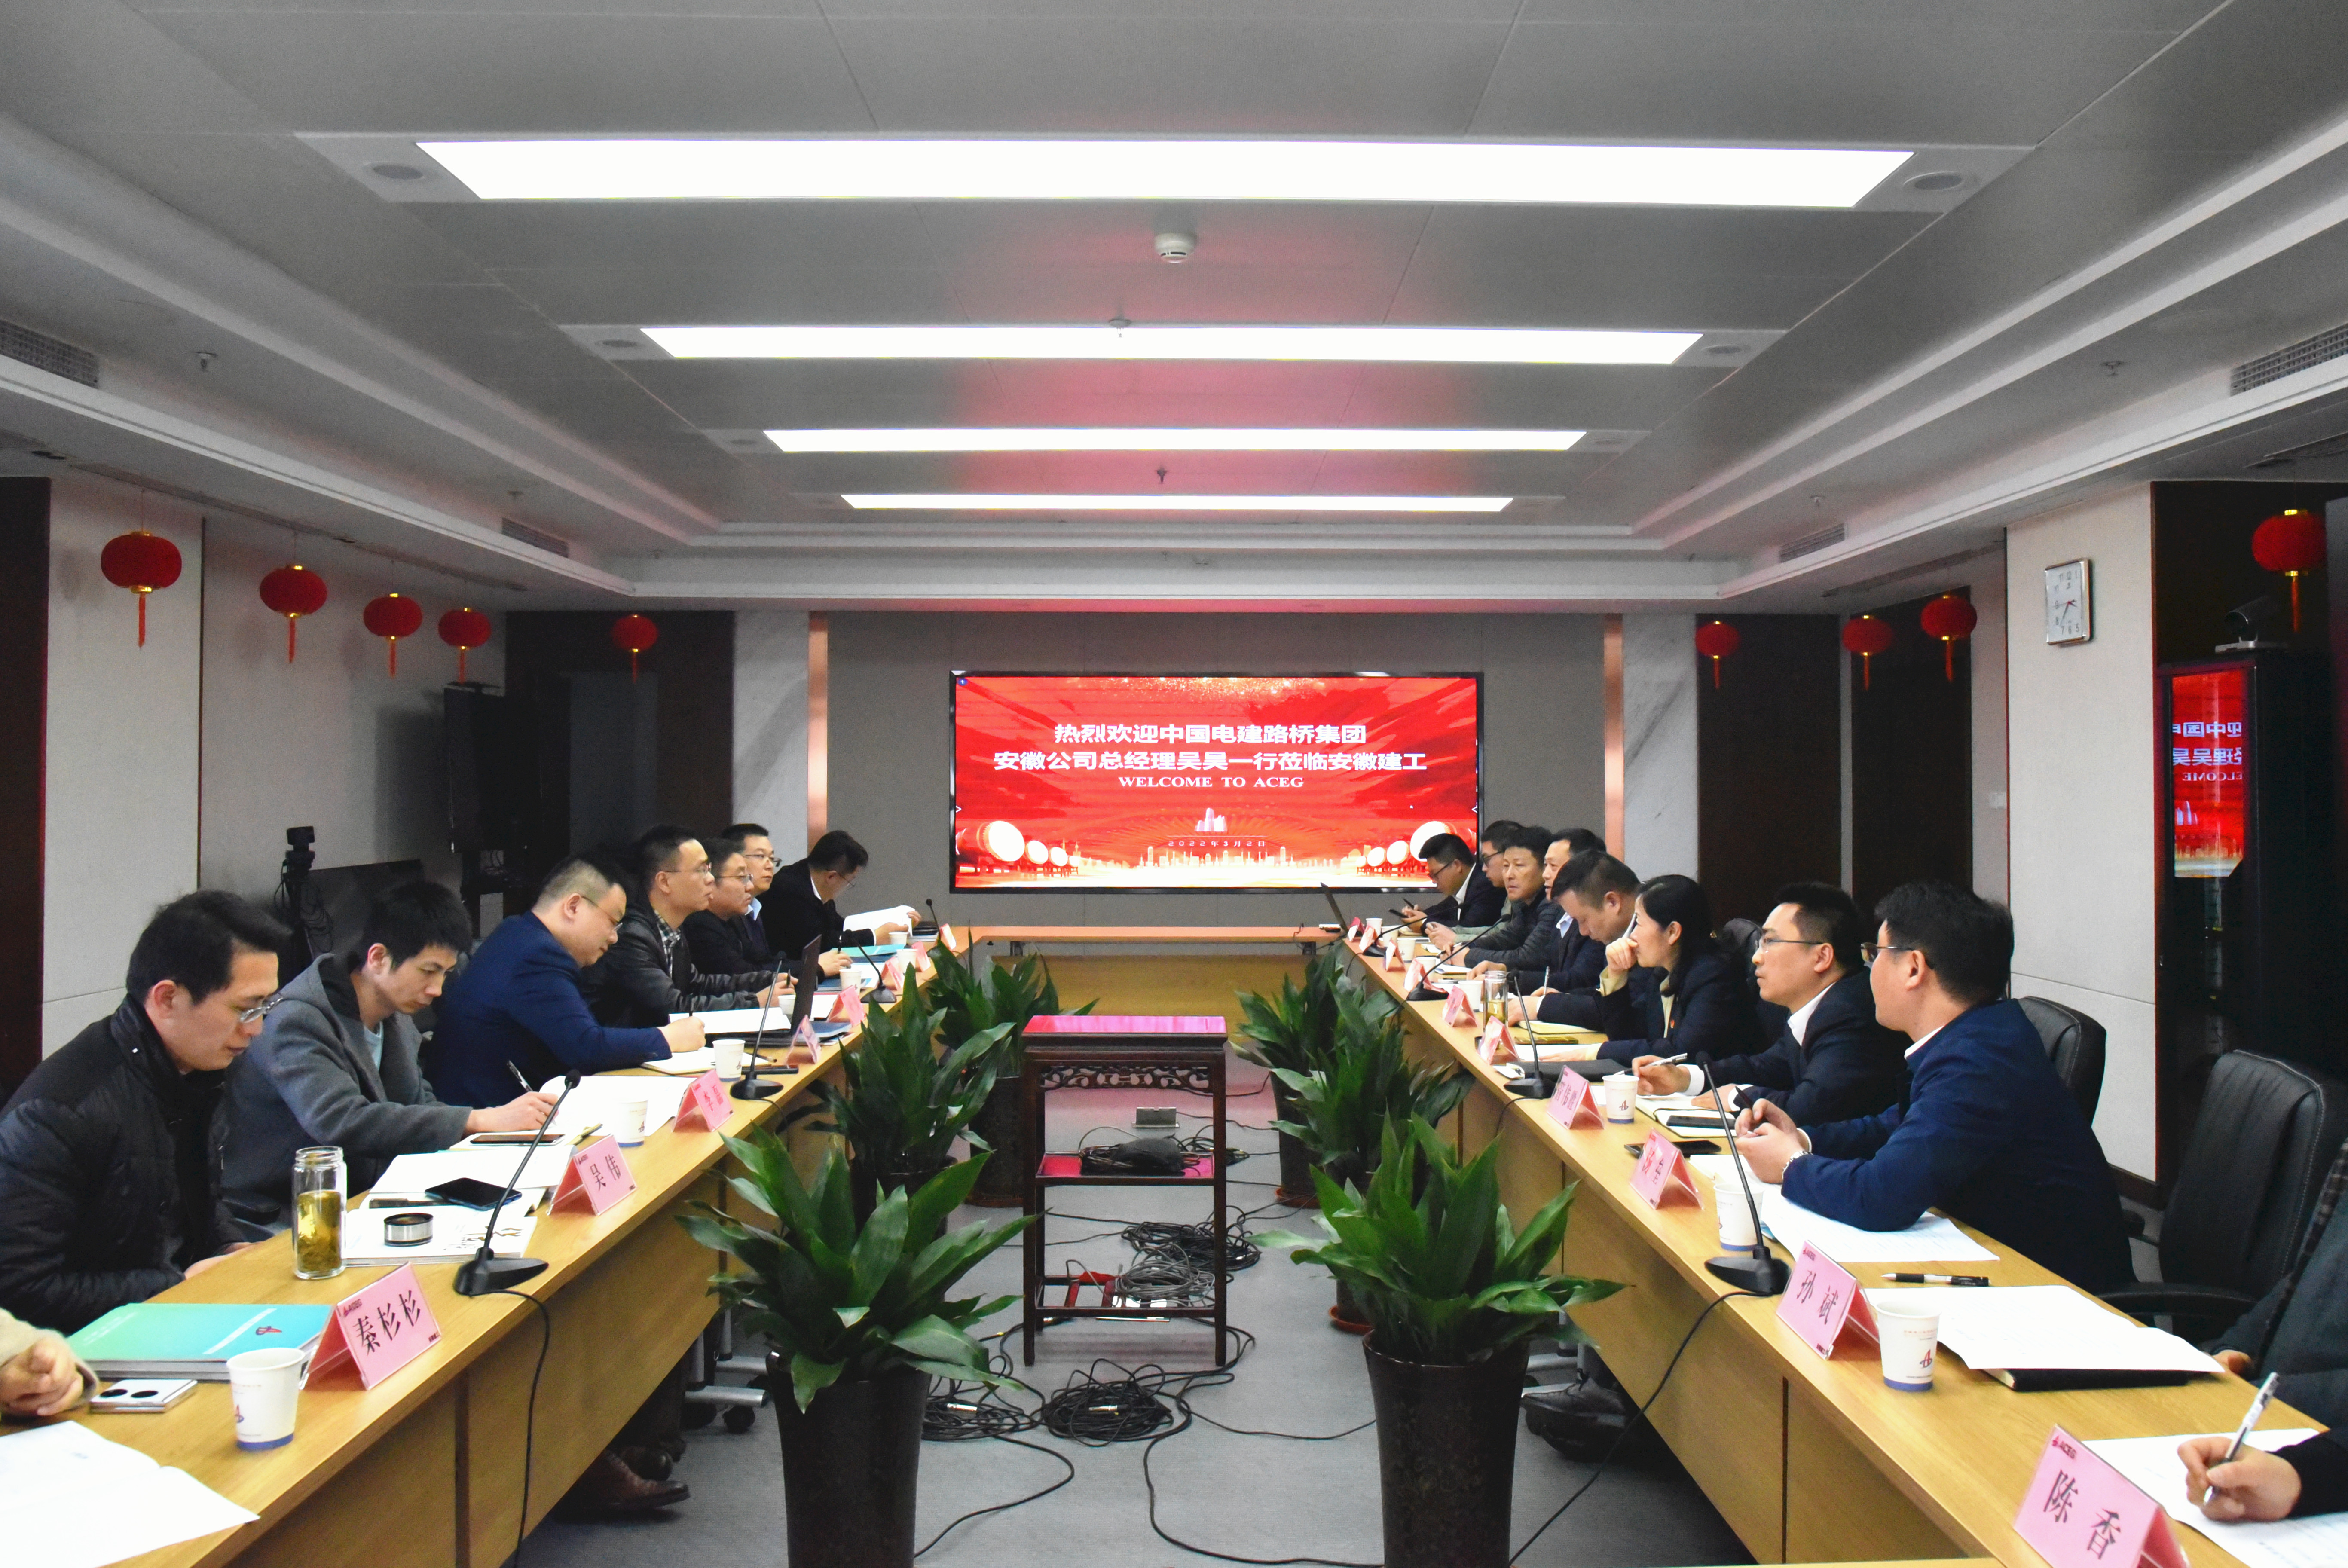 中国电建路桥集团安徽公司总经理吴昊一行到访安徽建工